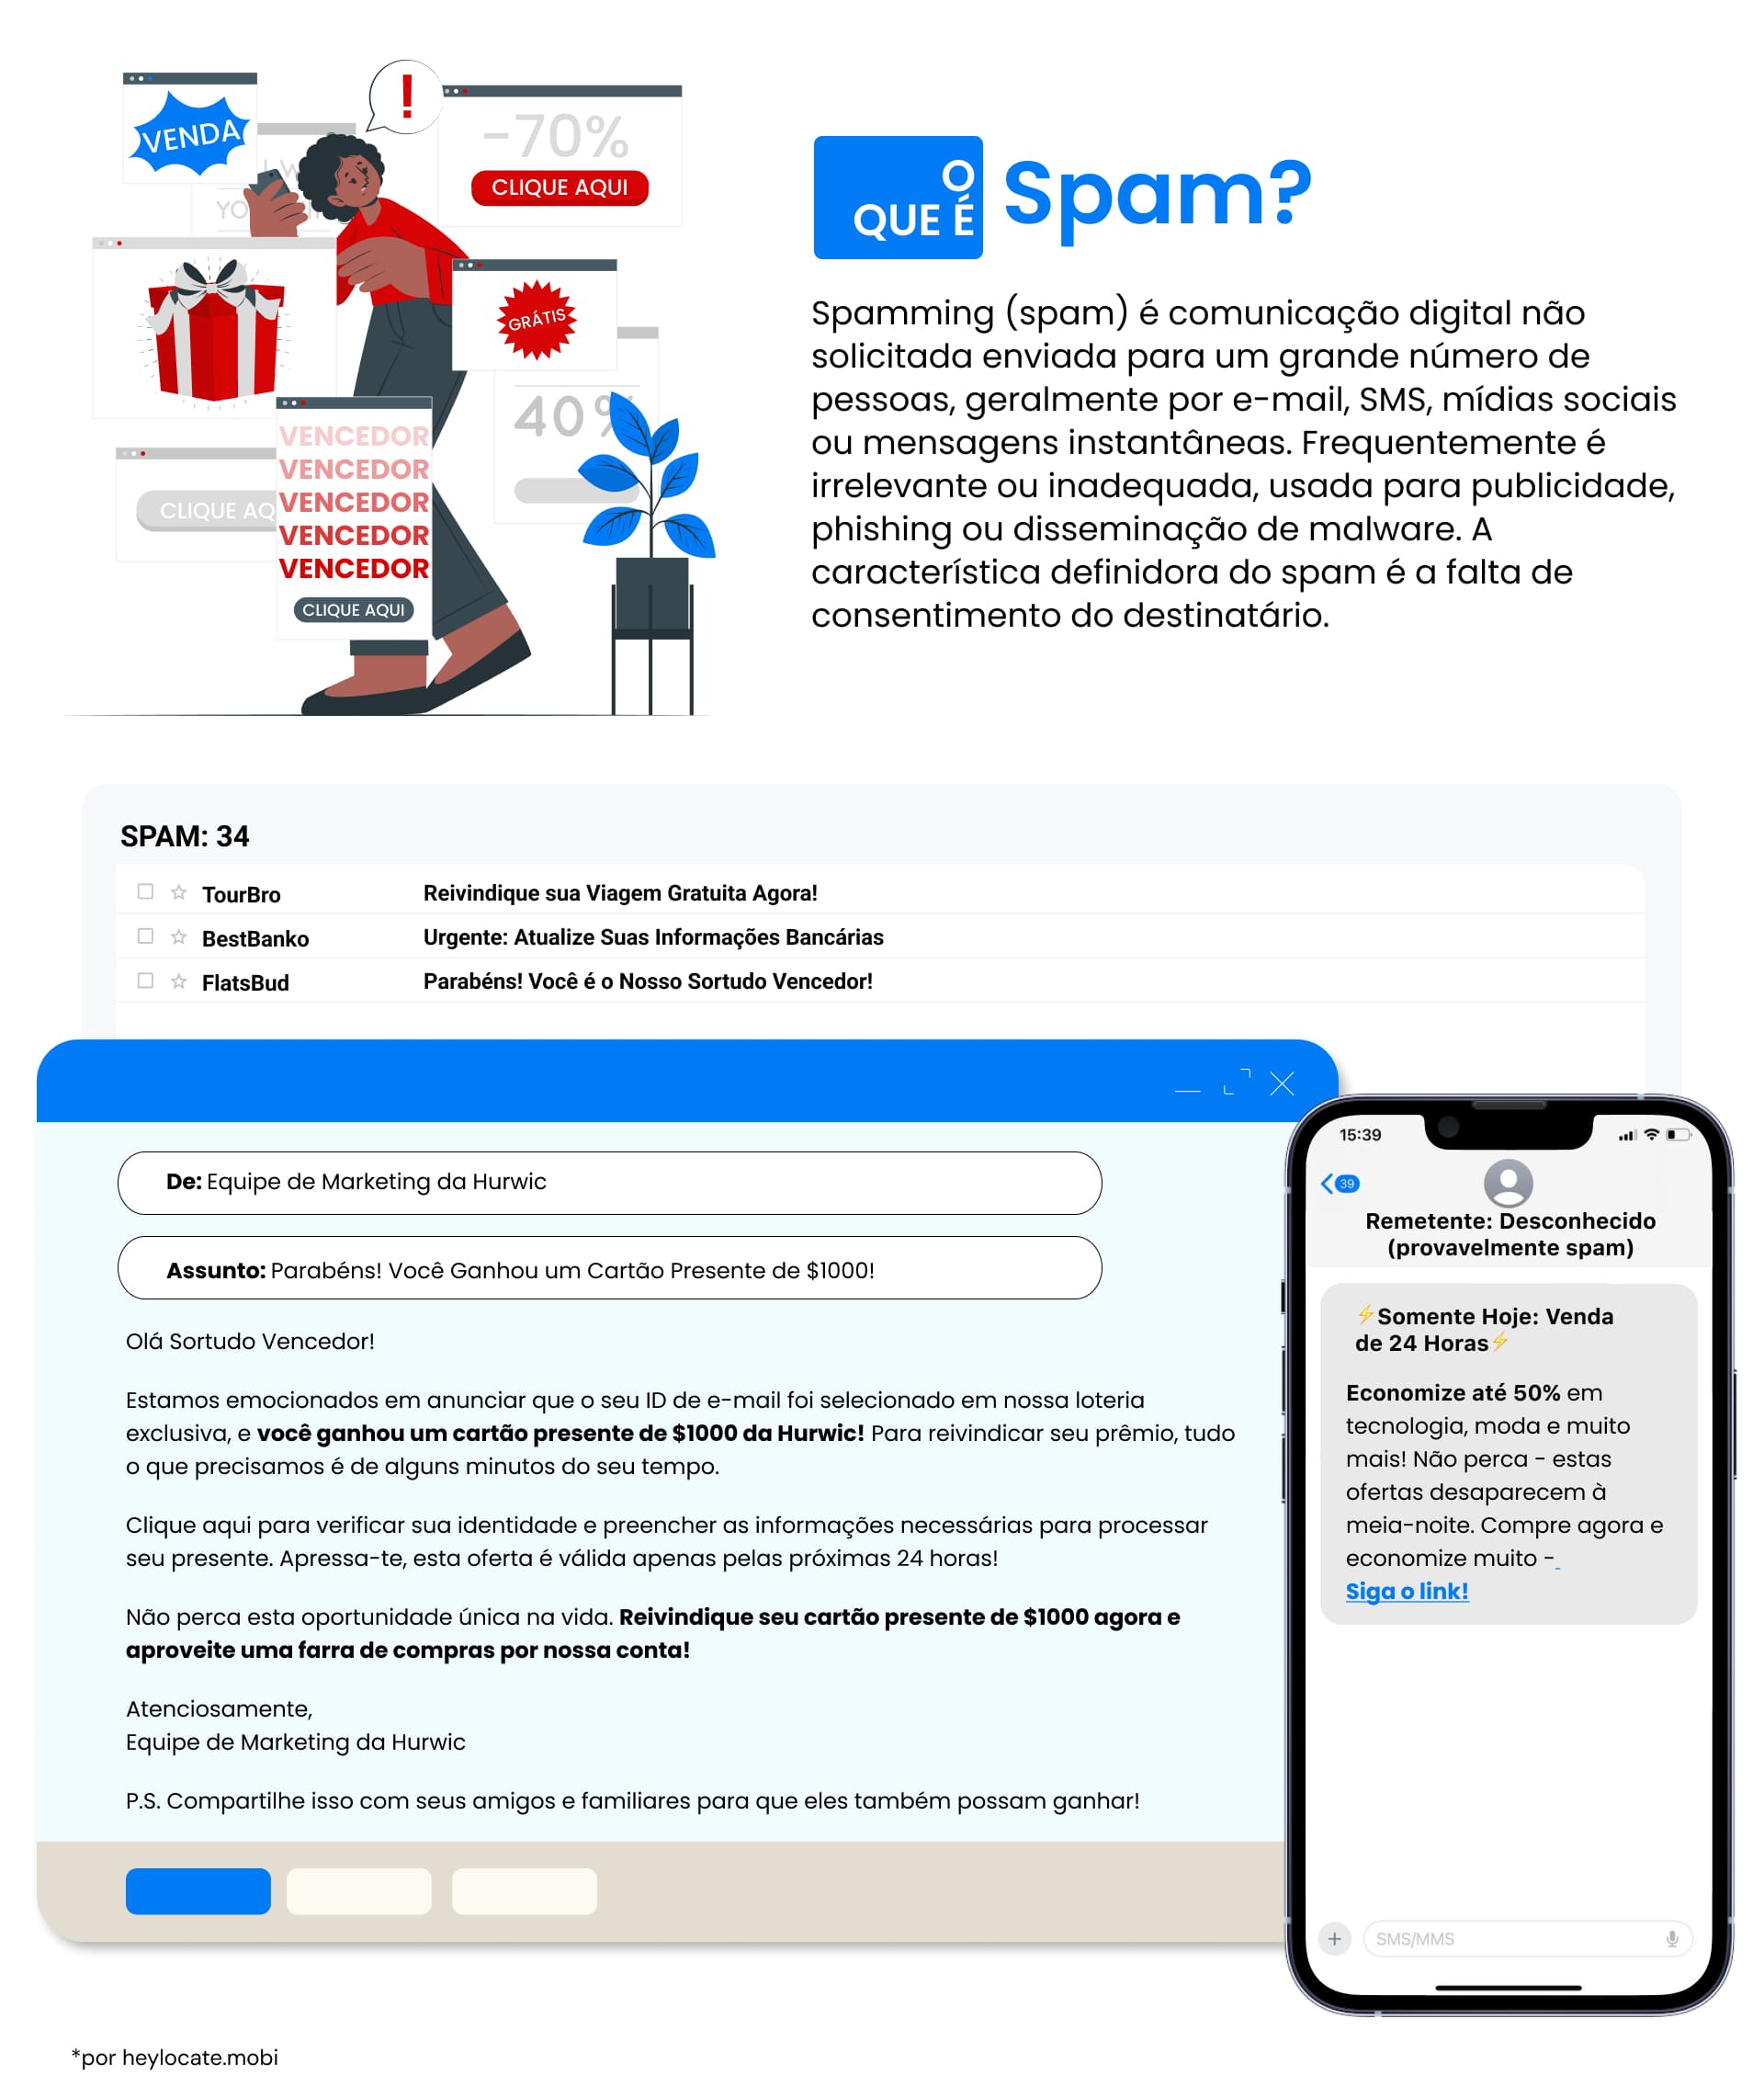 Um infográfico que mostra várias formas de mensagens e e-mails de spam, destacando sua natureza intrusiva e enganosa